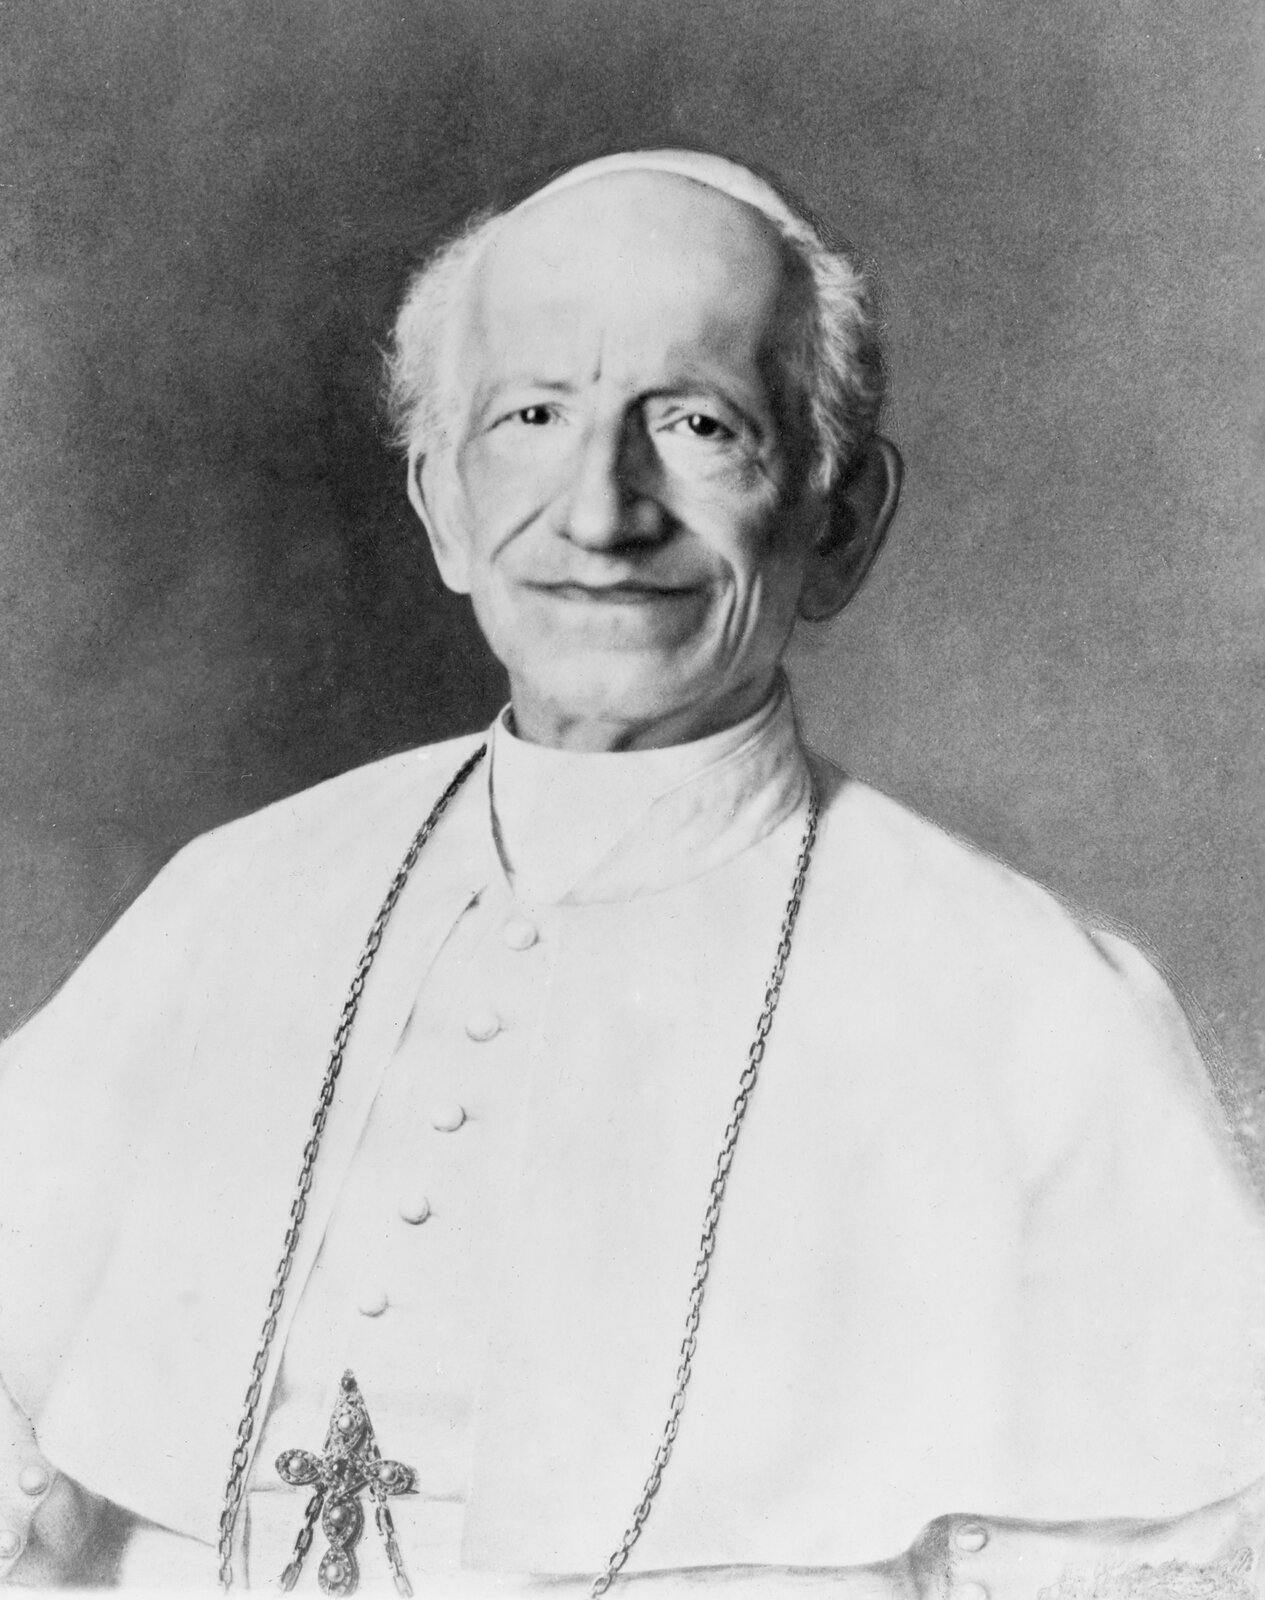 Zdjęcie przedstawia starszego mężczyznę w białym, papieskim stroju i piusce na głowie. Na jego szyi wisi krzyż na długim łańcuchu.